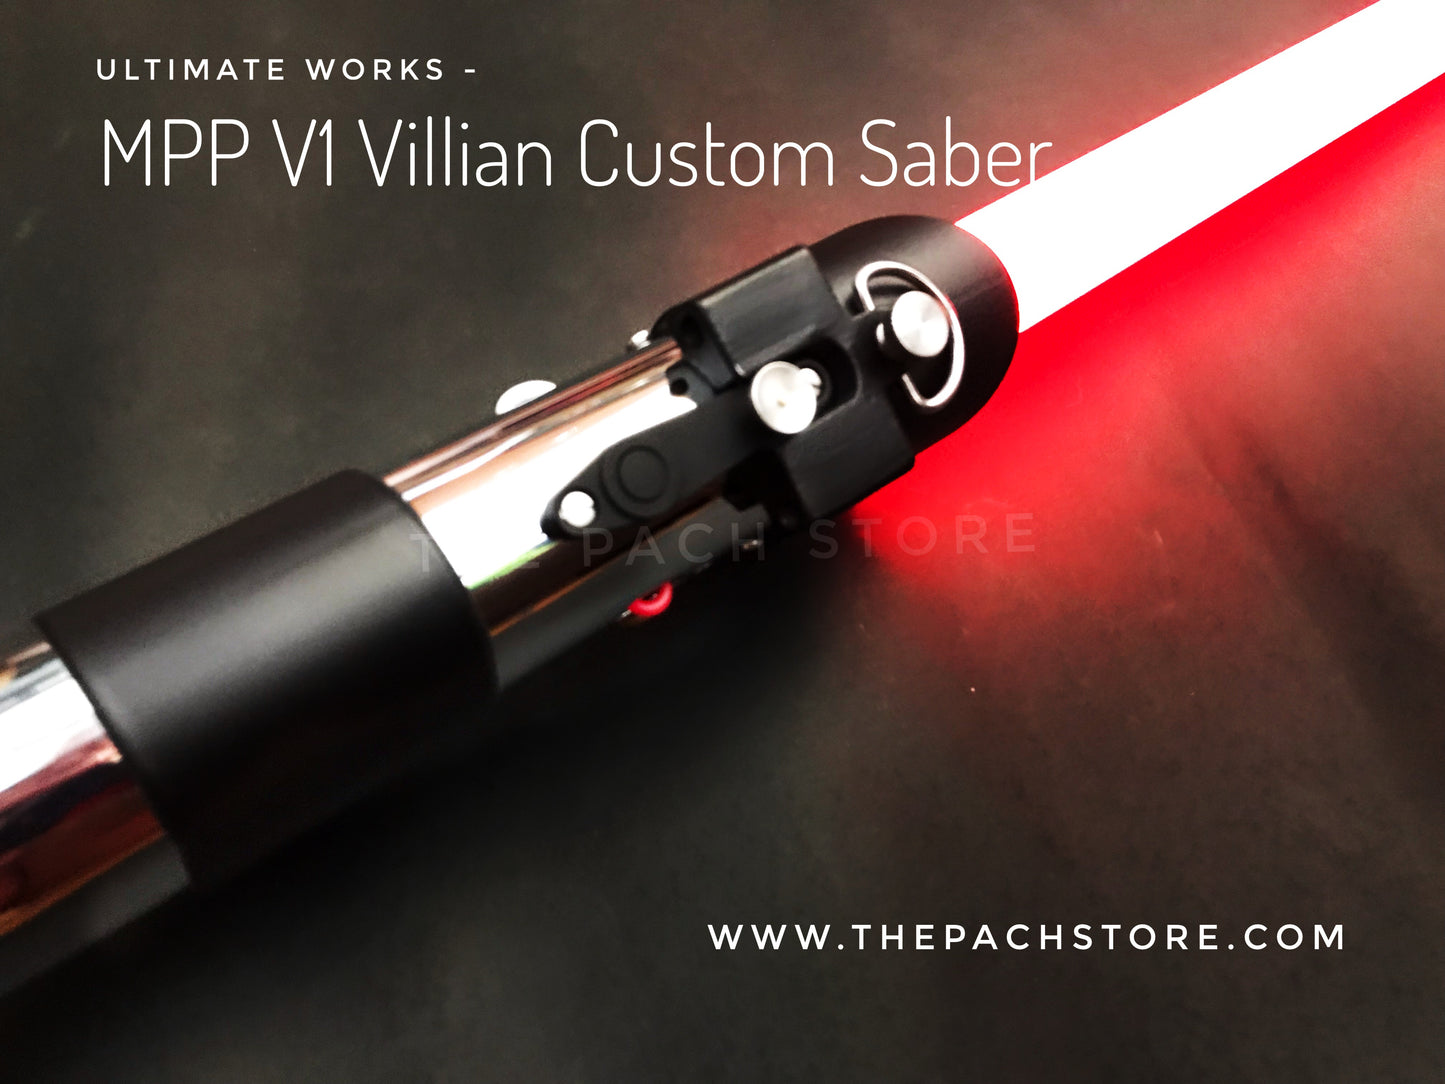 Ultimate Works - MPP V1 Villian Custom Saber